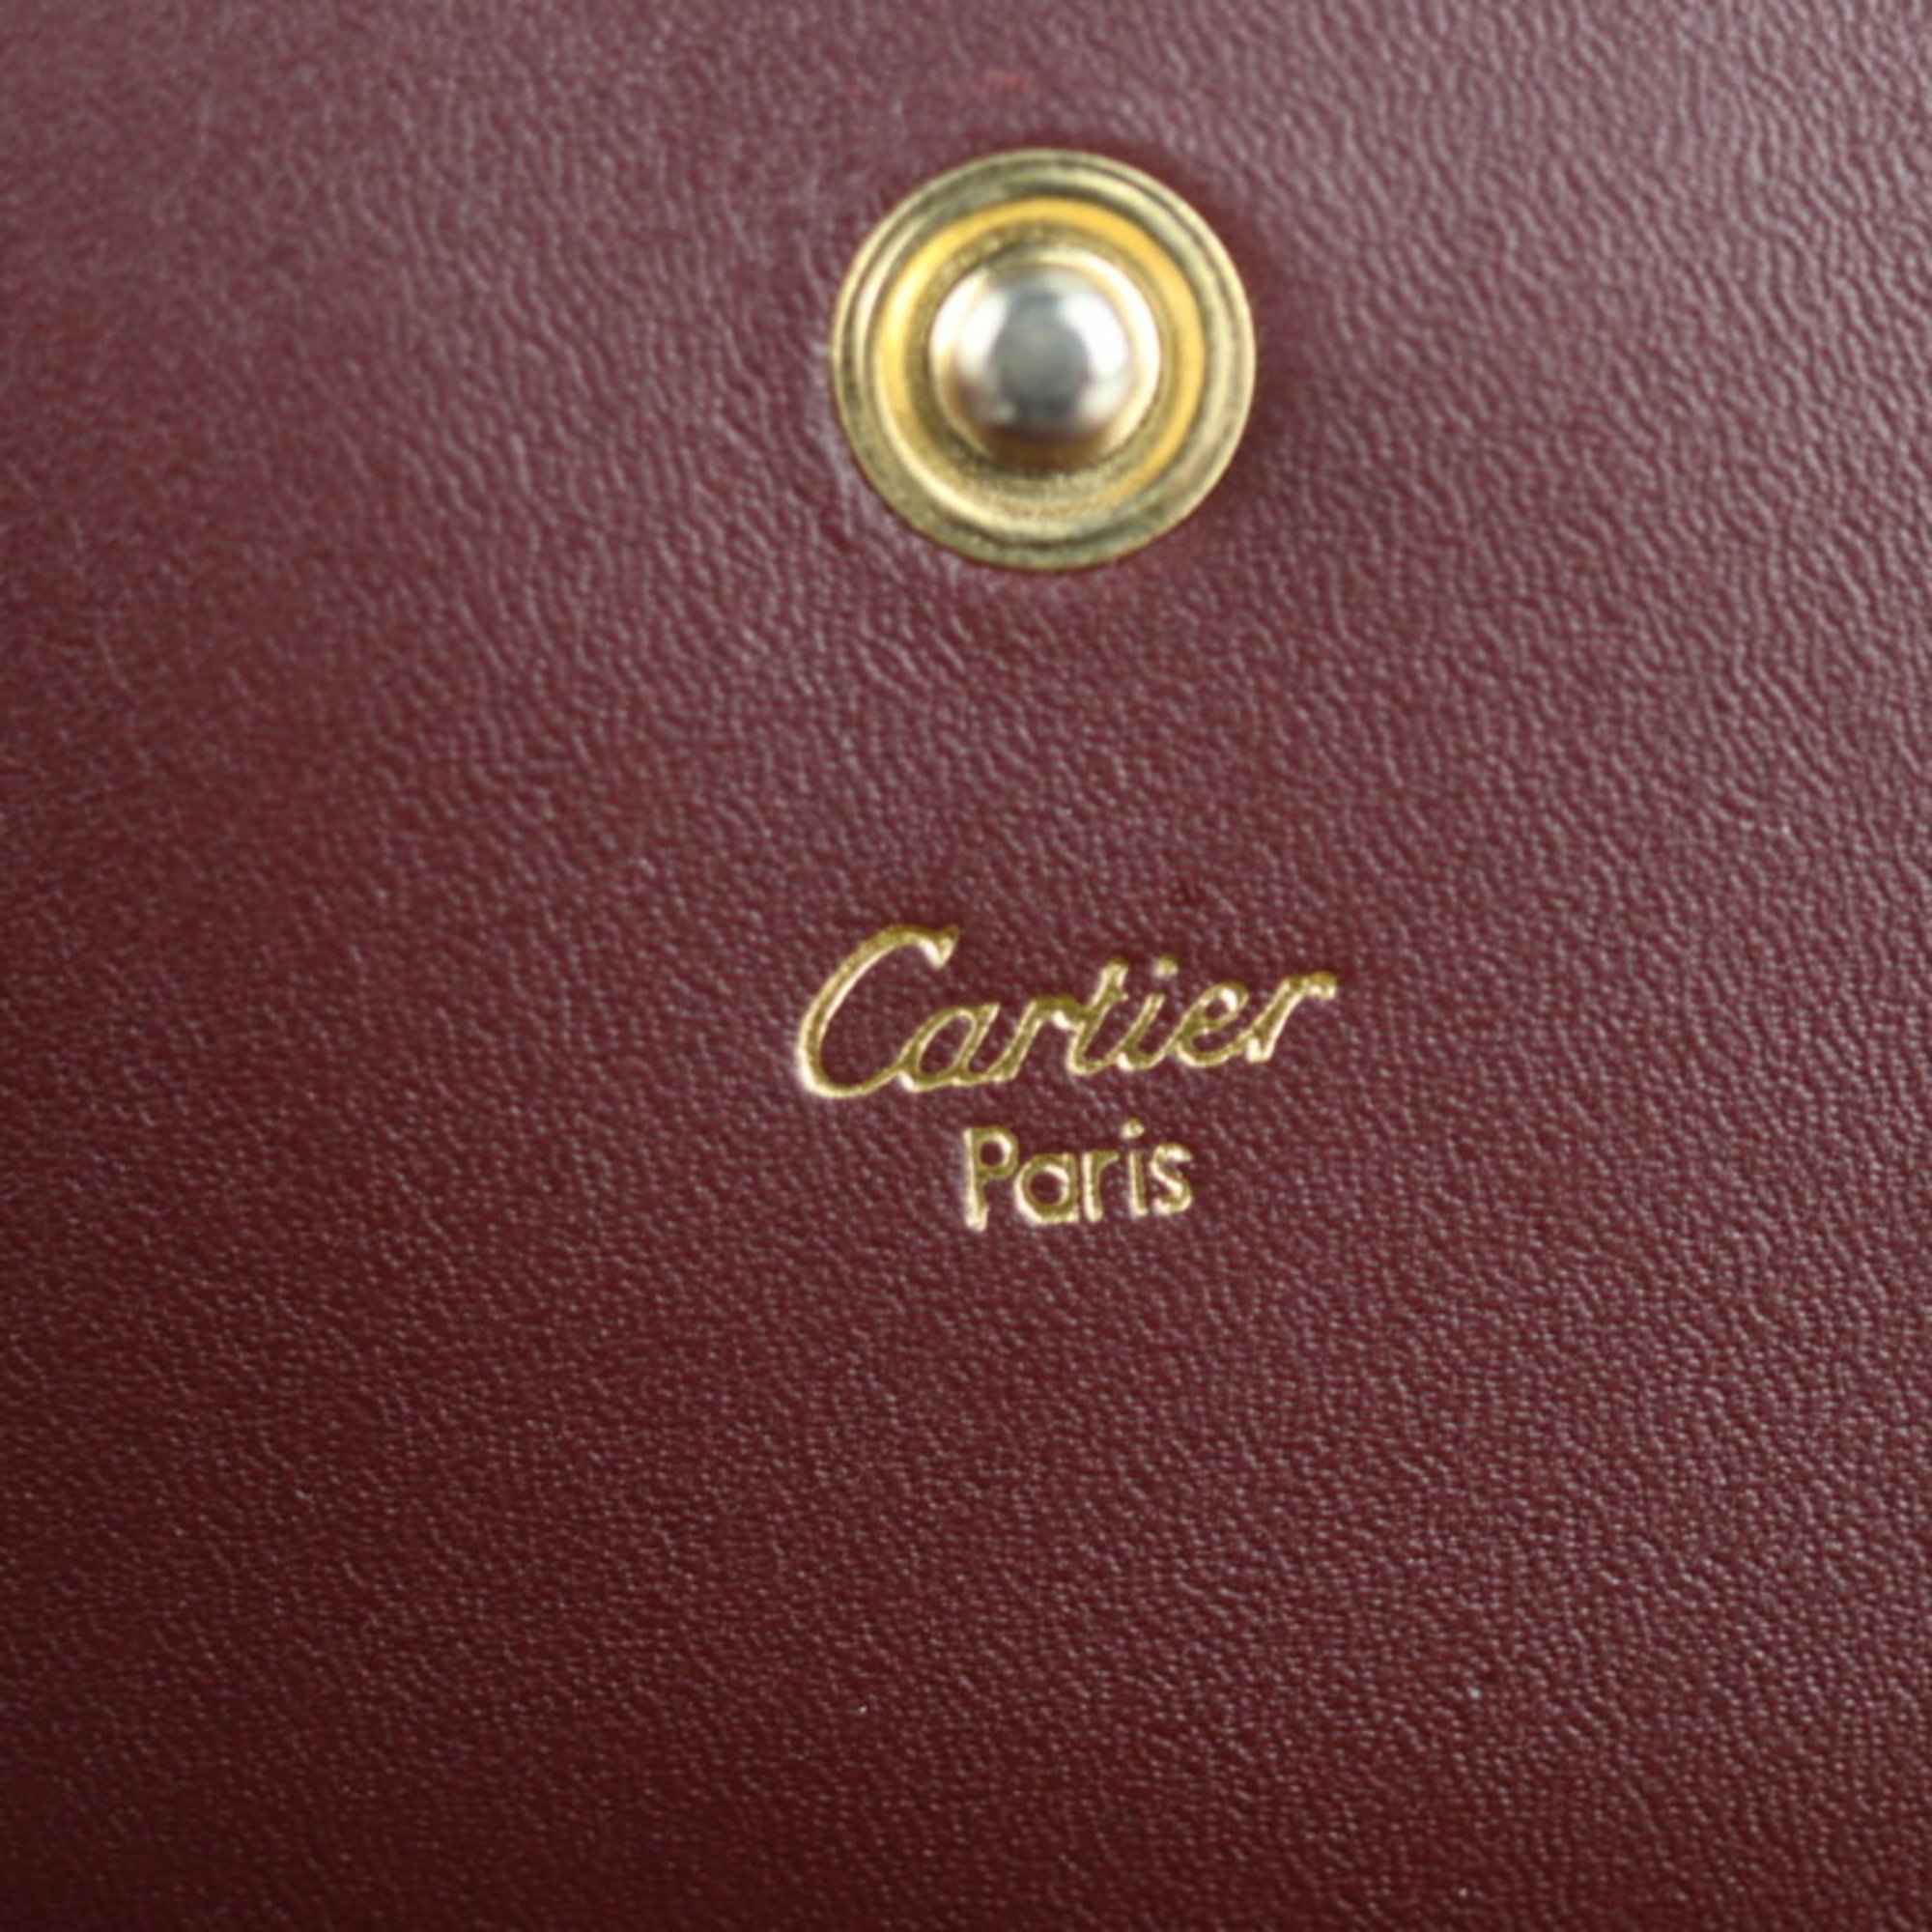 CARTIER Cartier must de line tri-fold wallet leather Bordeaux gold metal fittings medium-long clasp corner plate